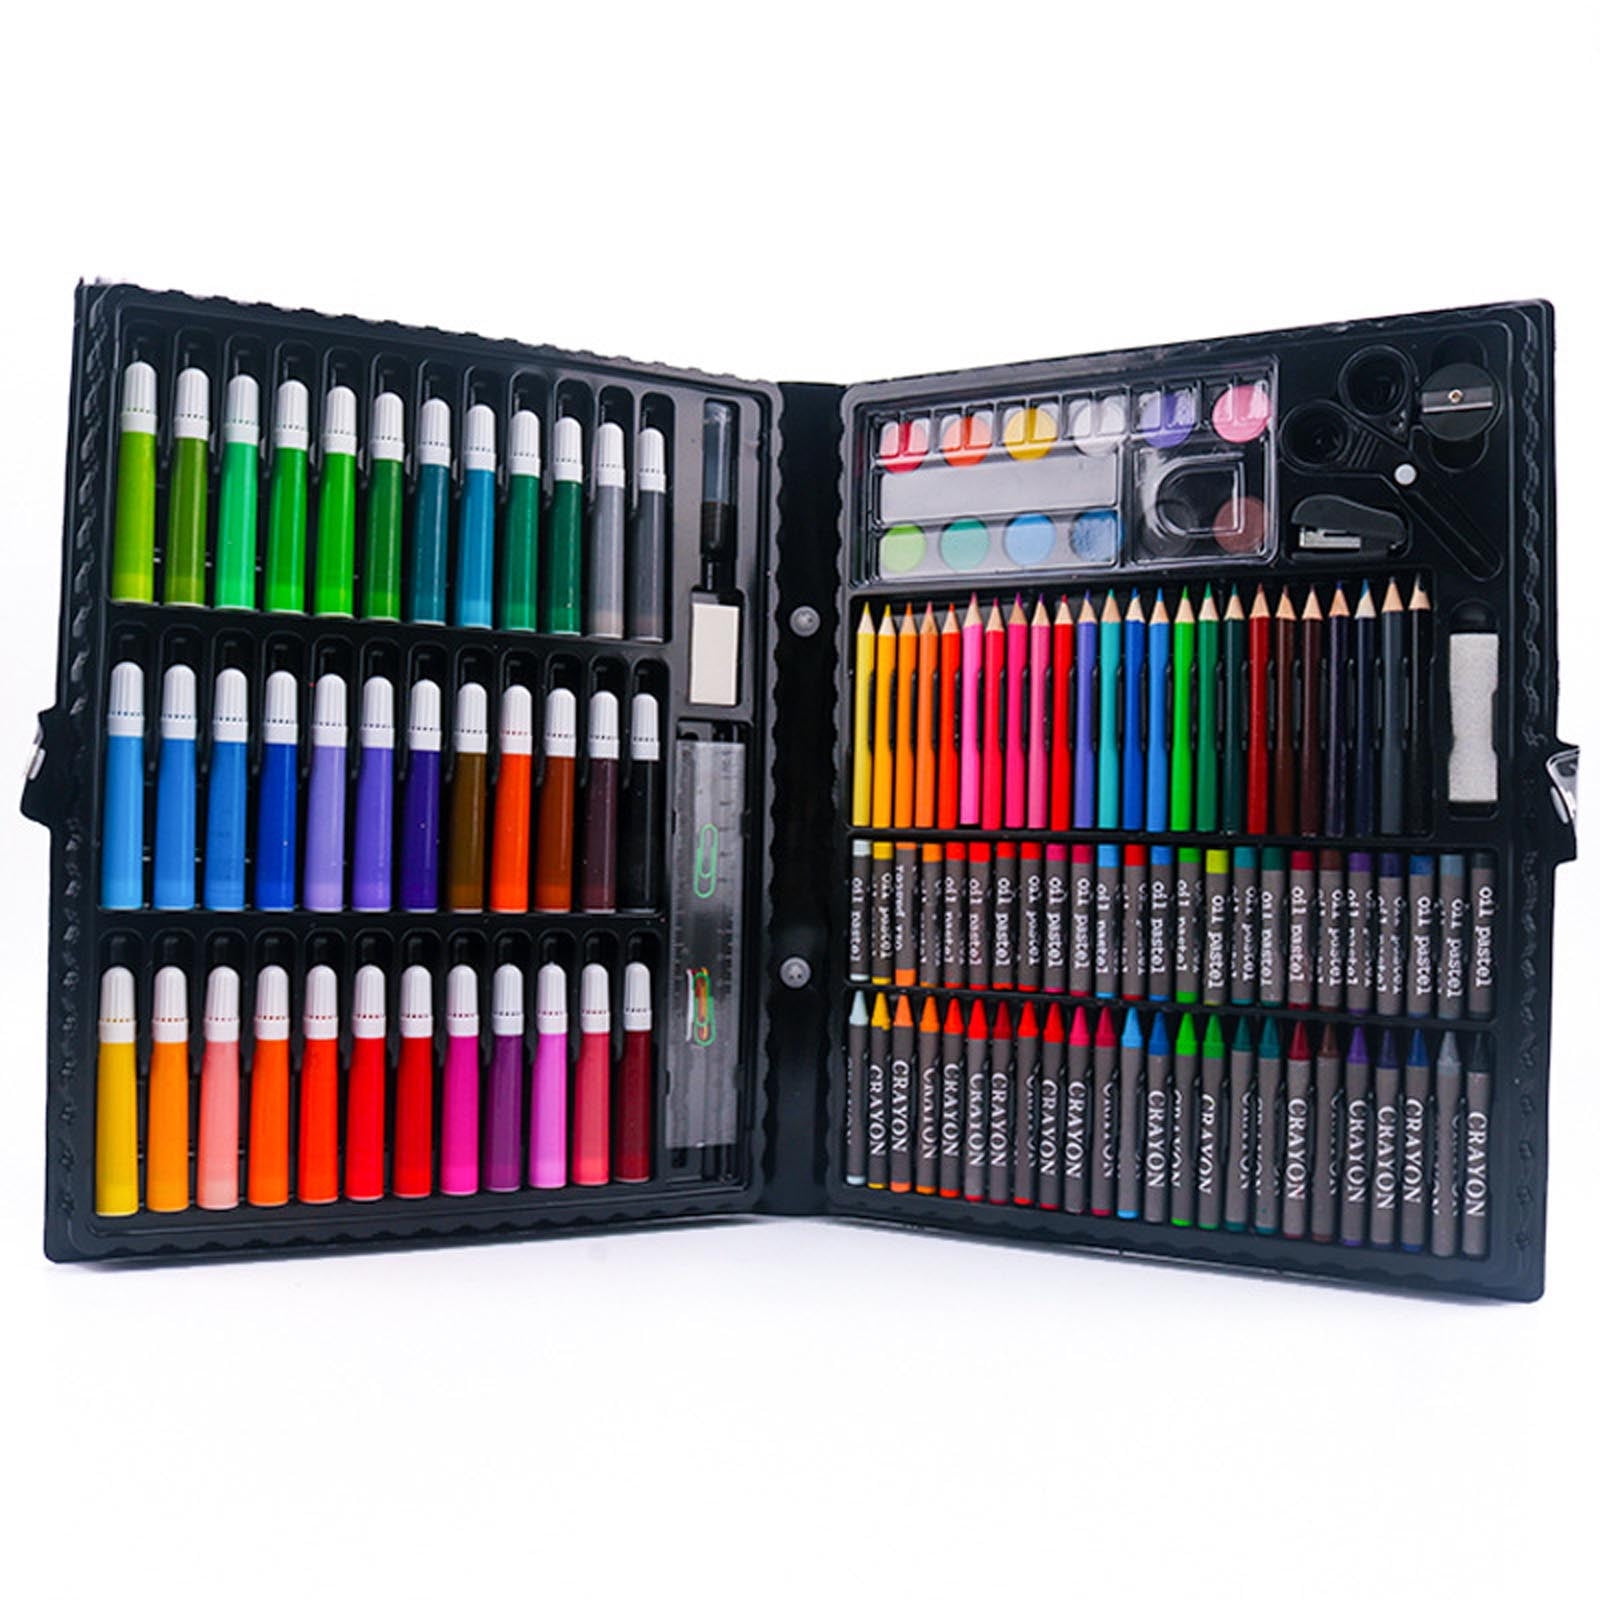 12 Pcs/Set Two-Color Core Colored Pencils Set 24 Colors Marker Pen